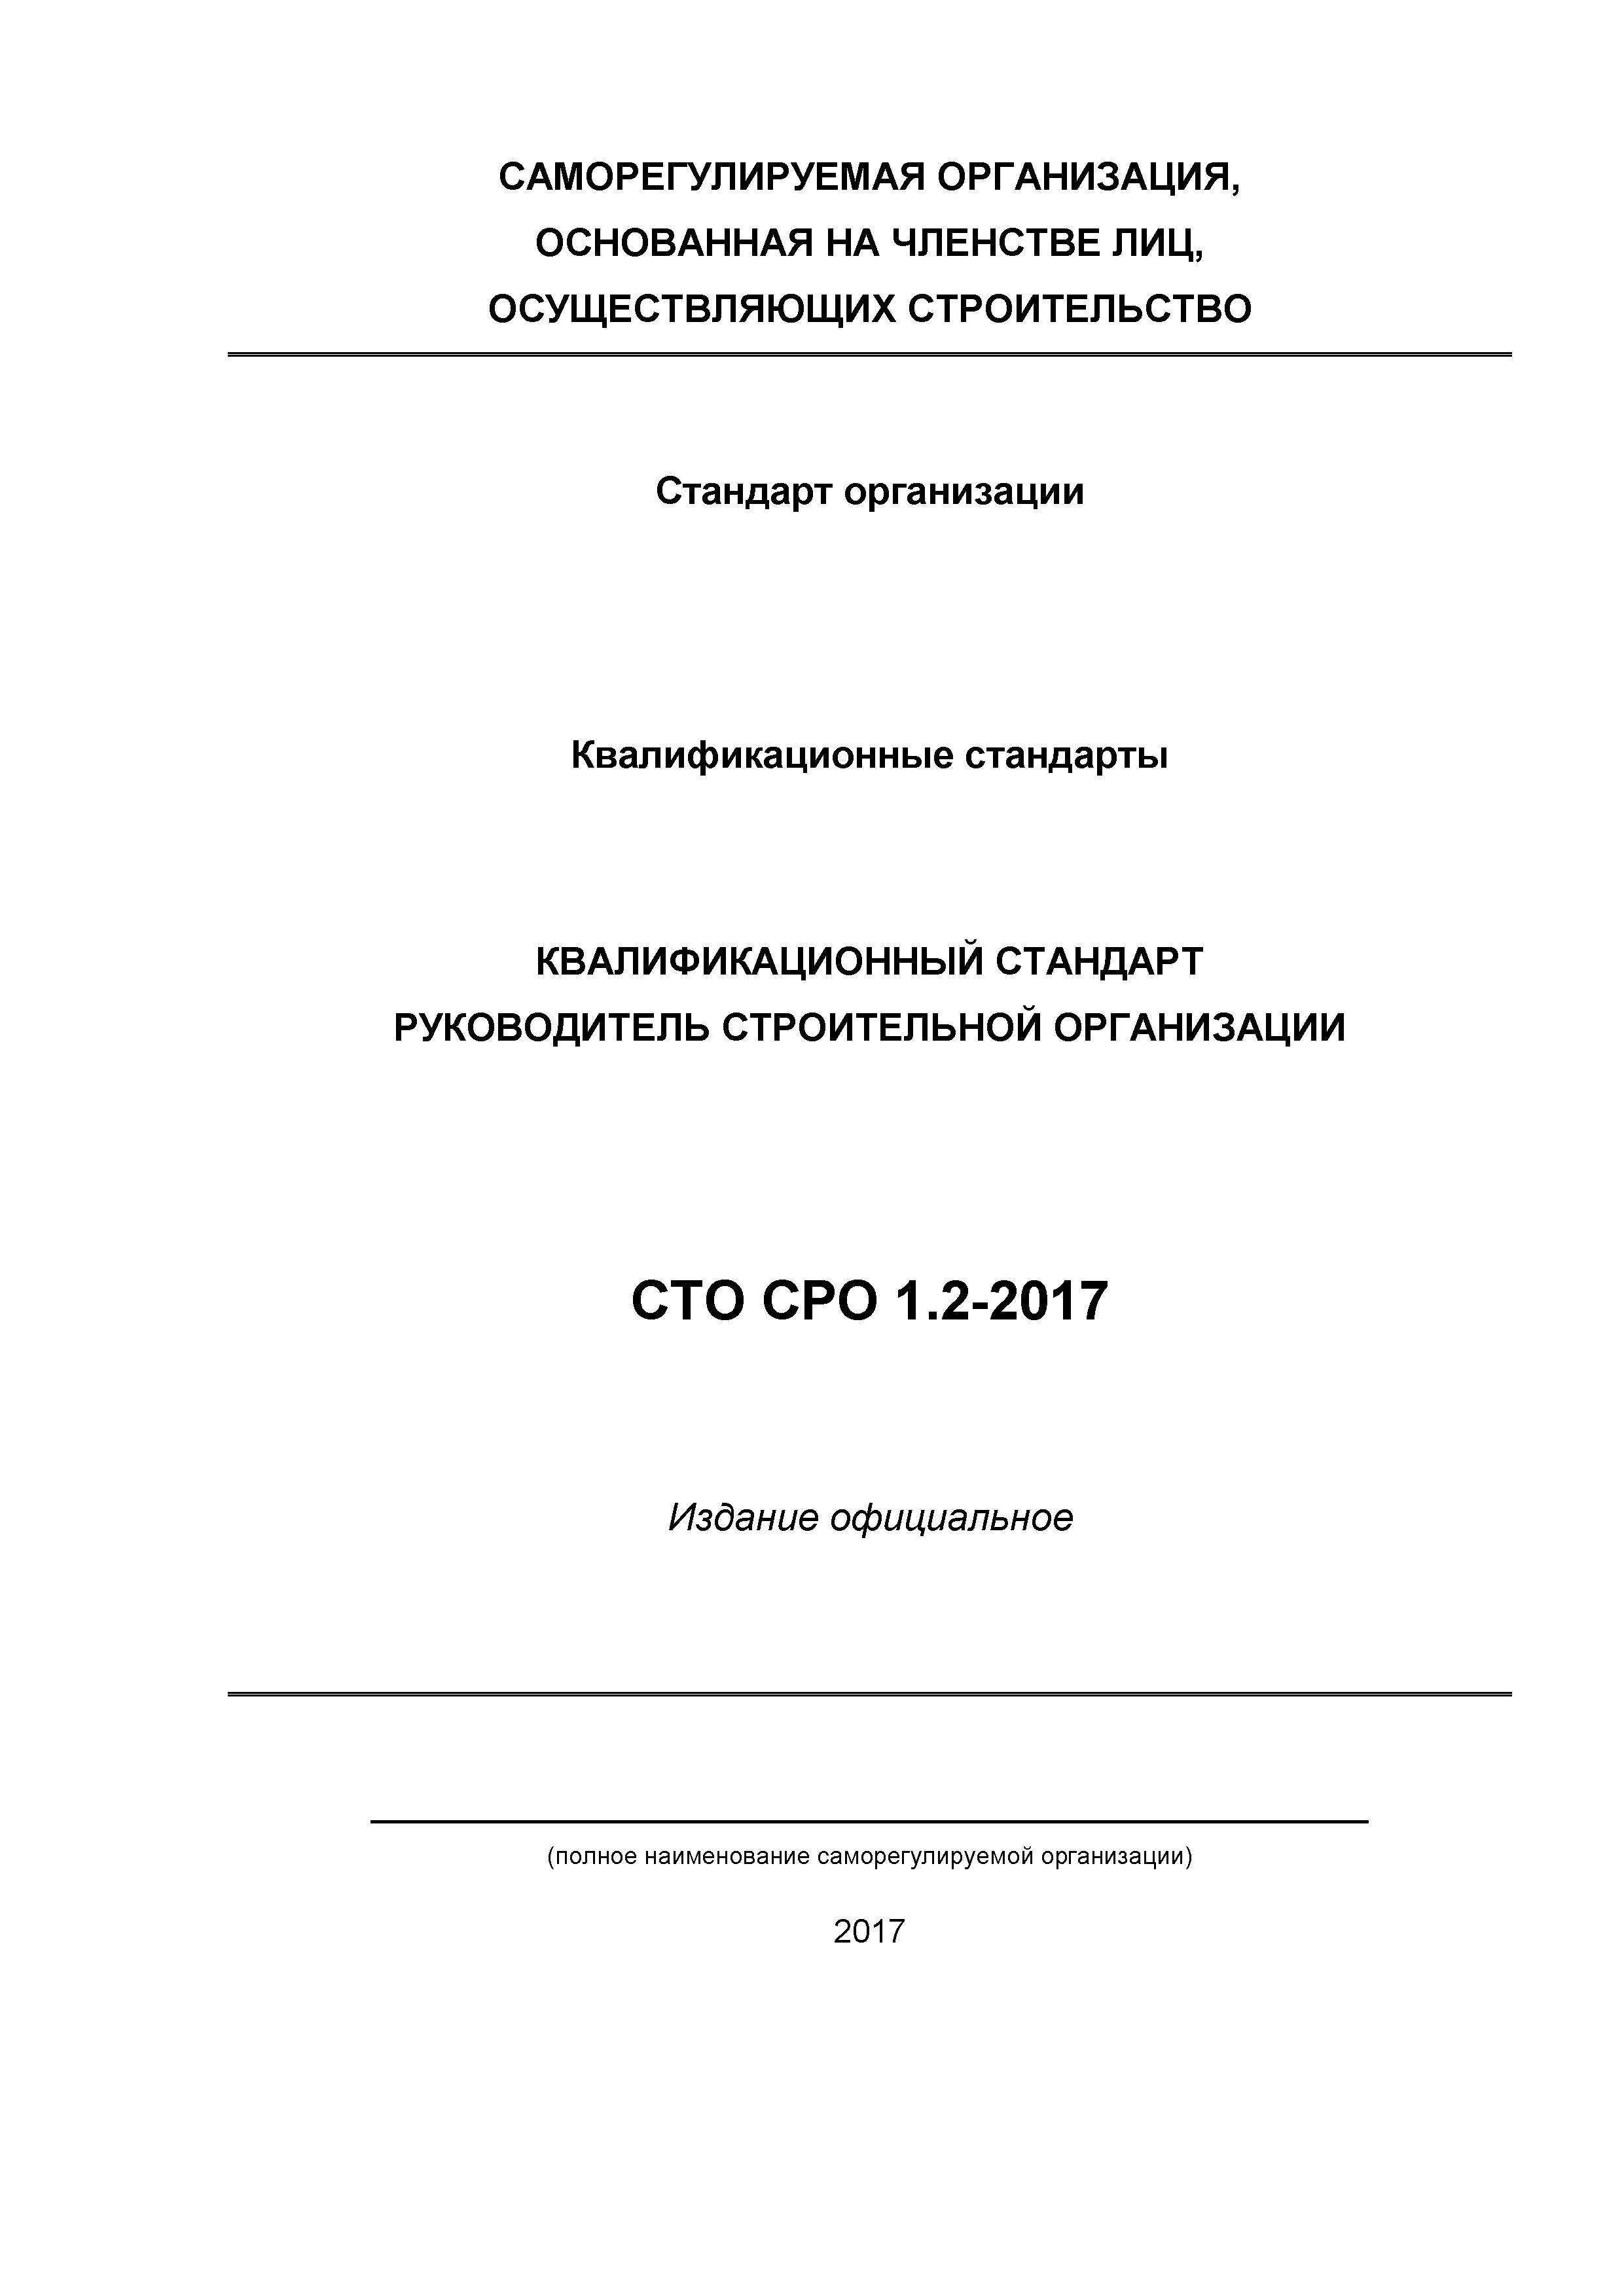 СТО СРО 1.2-2017